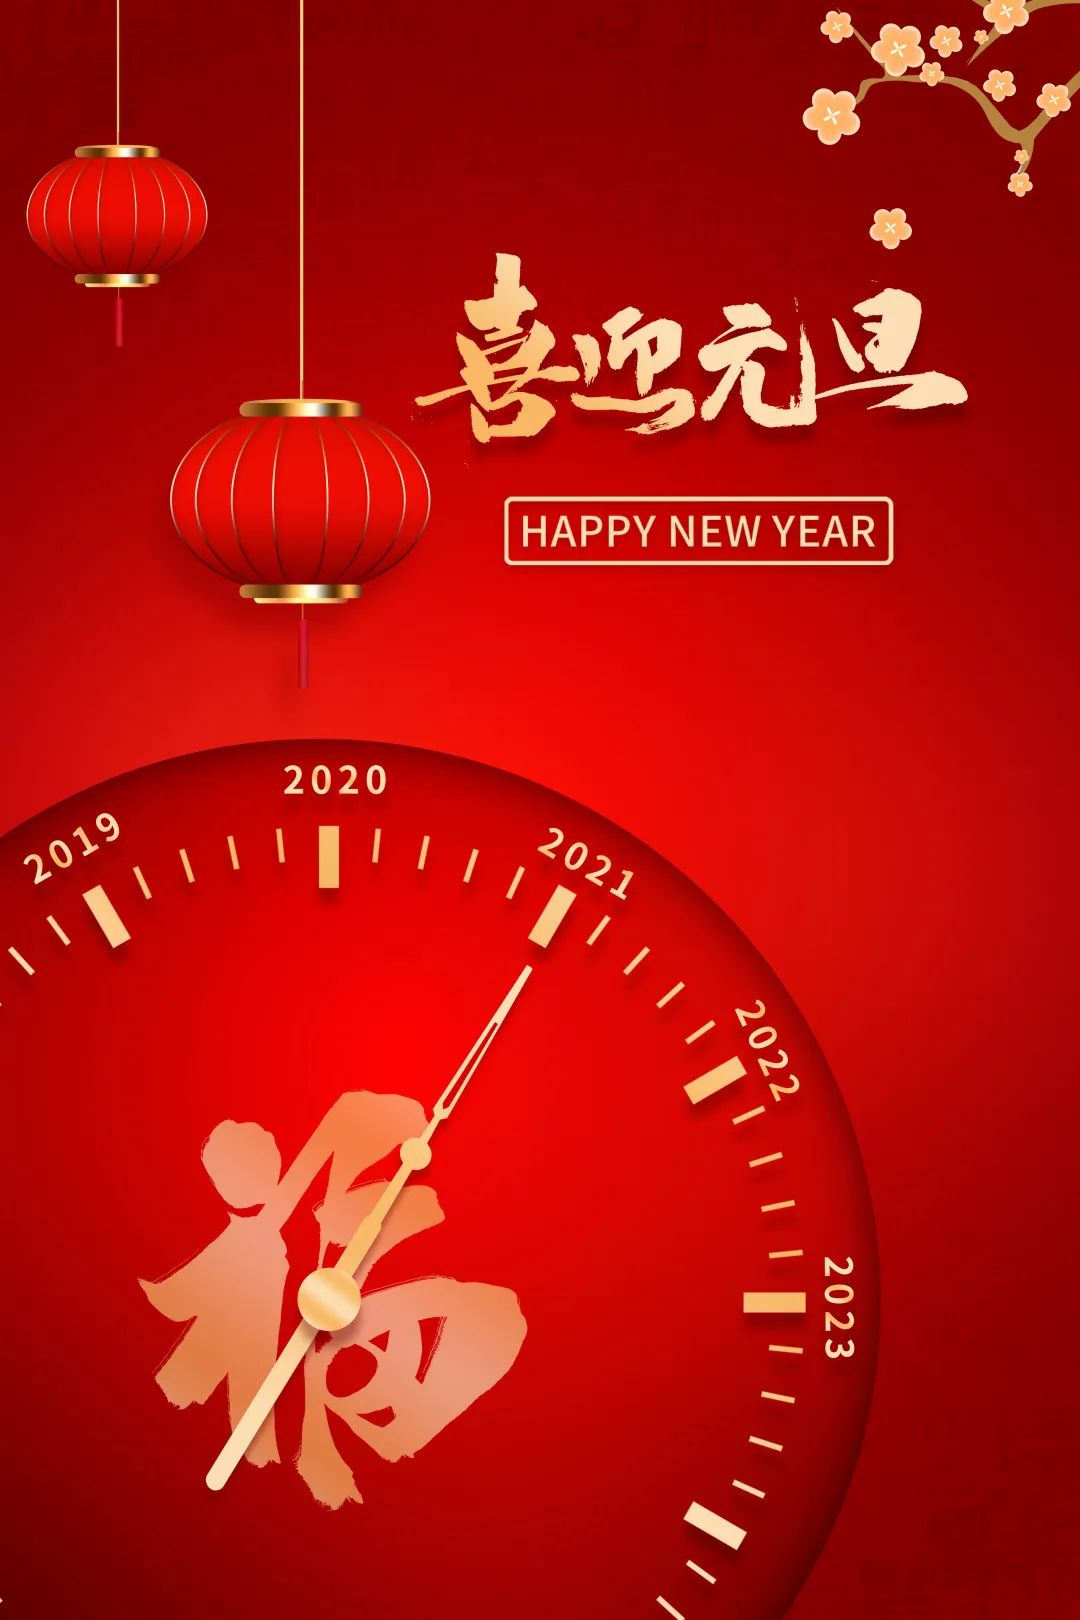 元旦快乐2021年上海人社官微与您一路同行